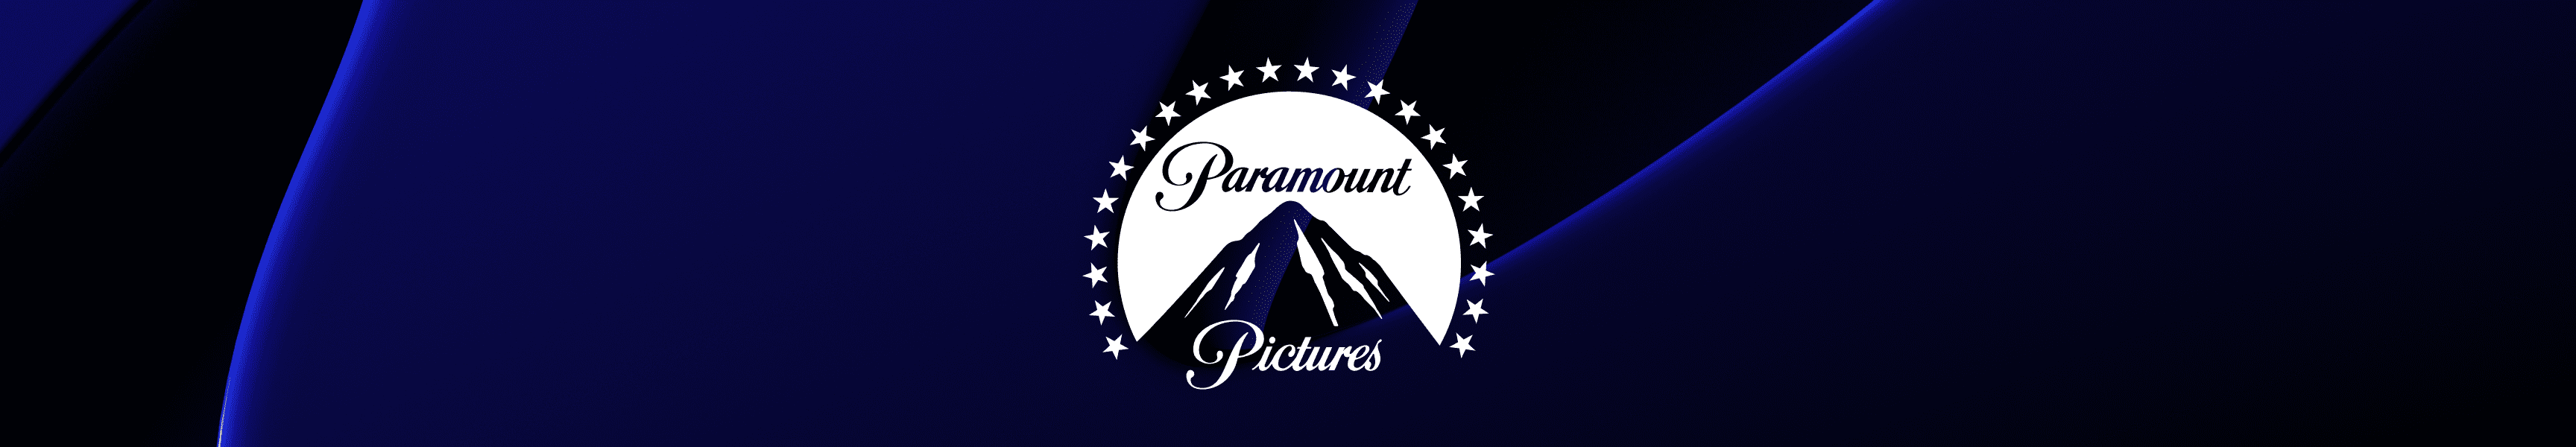 Paramount Pictures Vasos